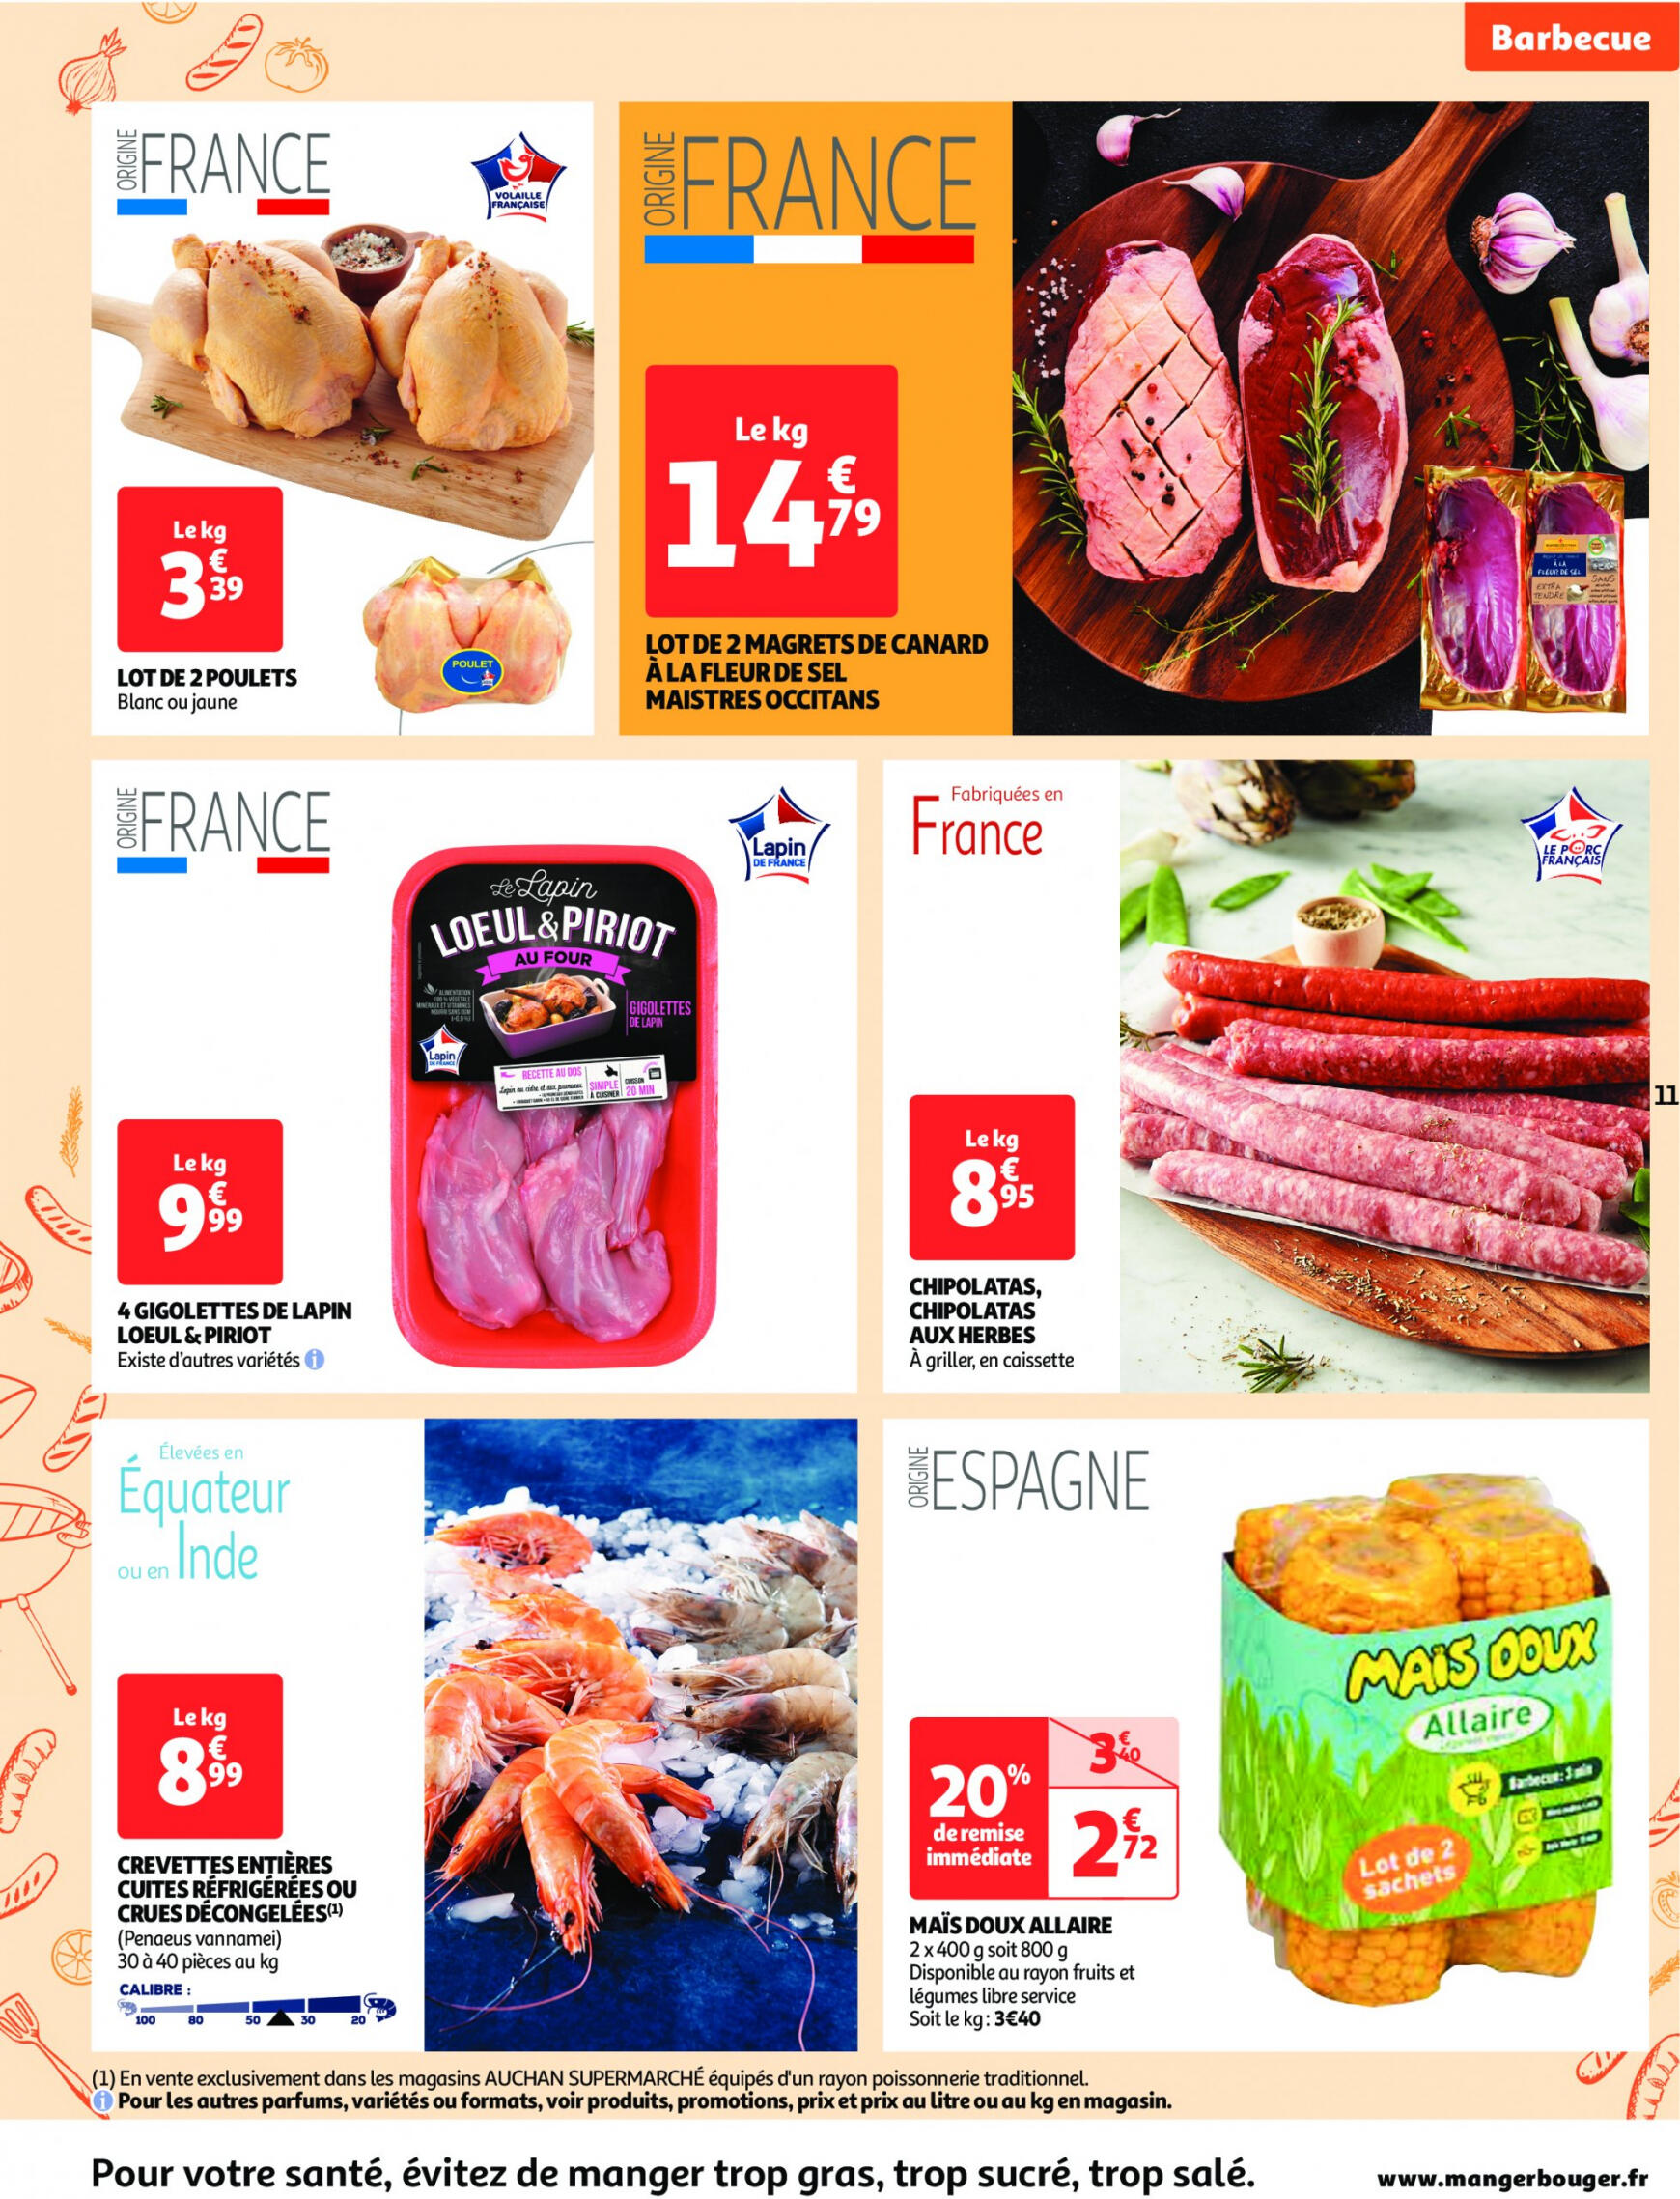 auchan - Auchan supermarché - Faites le plein de bonnes affaires folder huidig 22.05. - 26.05. - page: 11